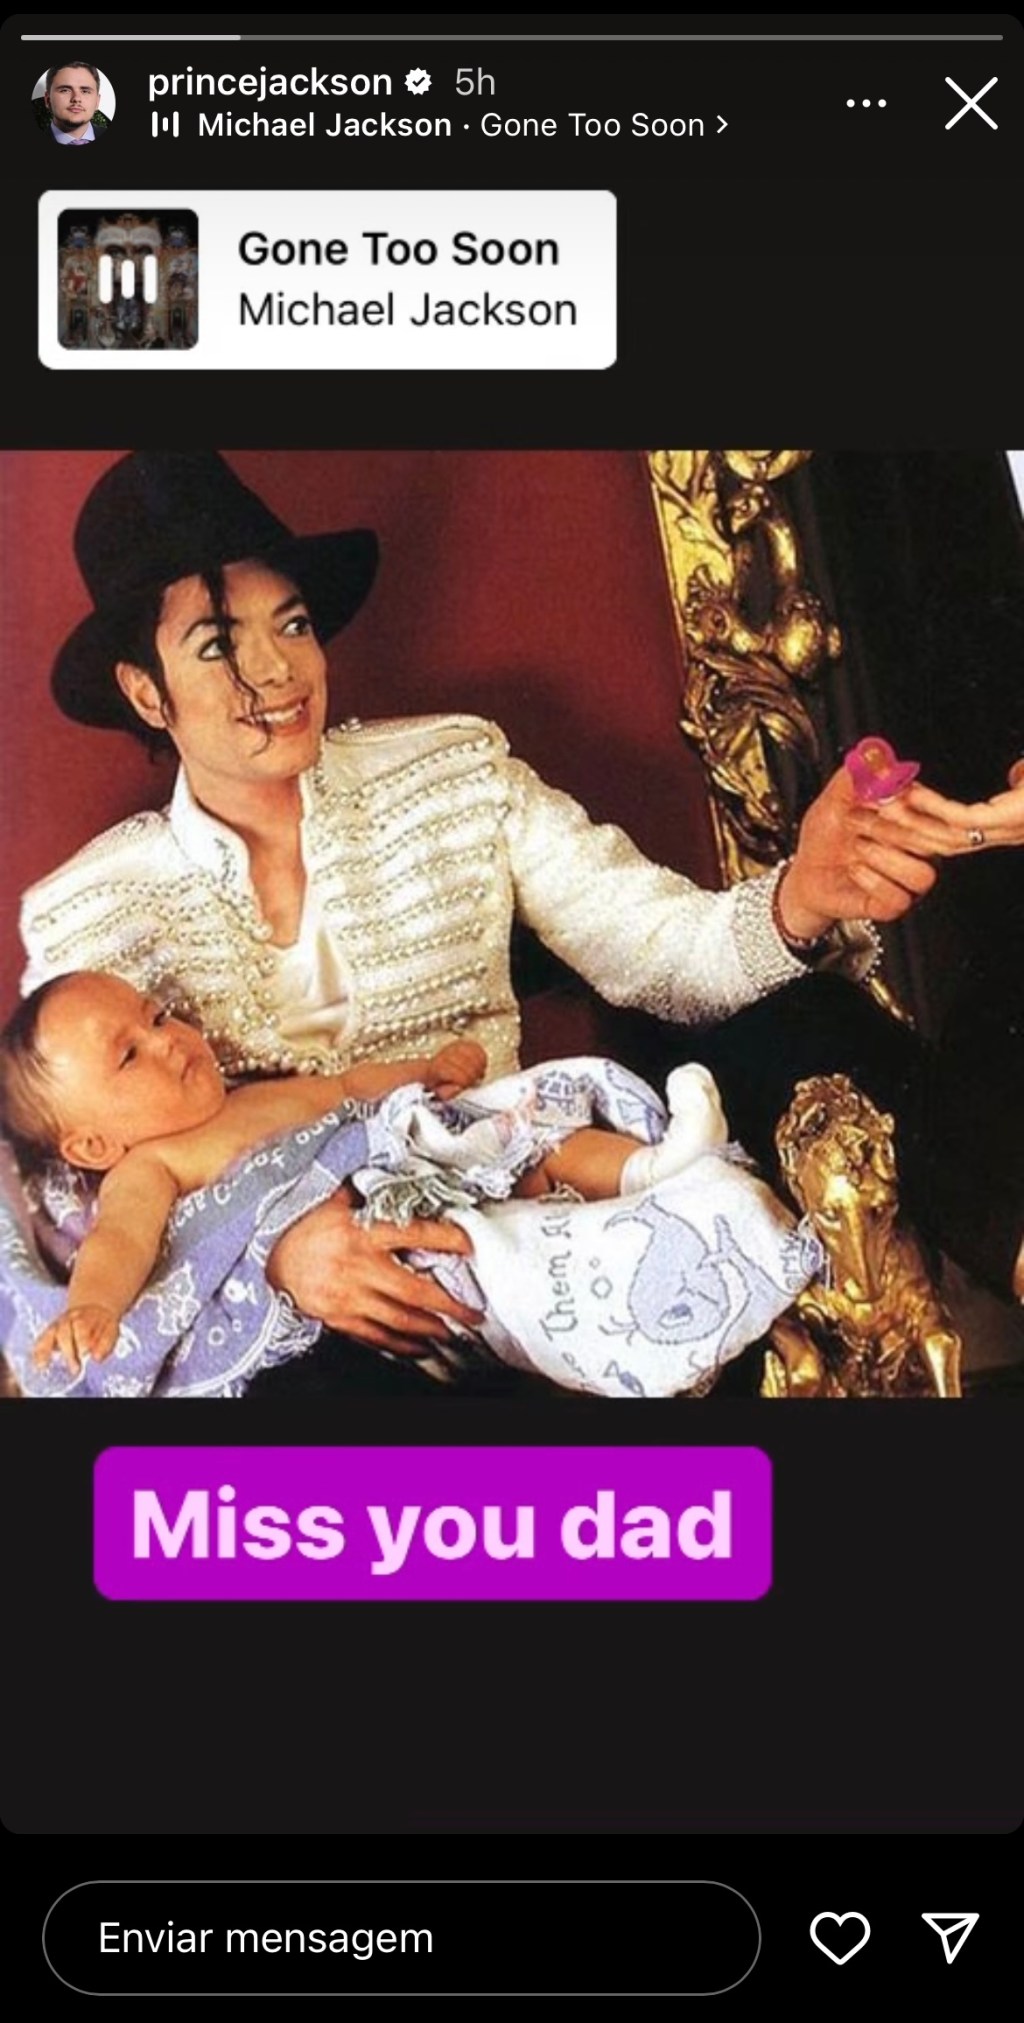 Postagem de Prince Jackson sobre o pai, Michael Jackson